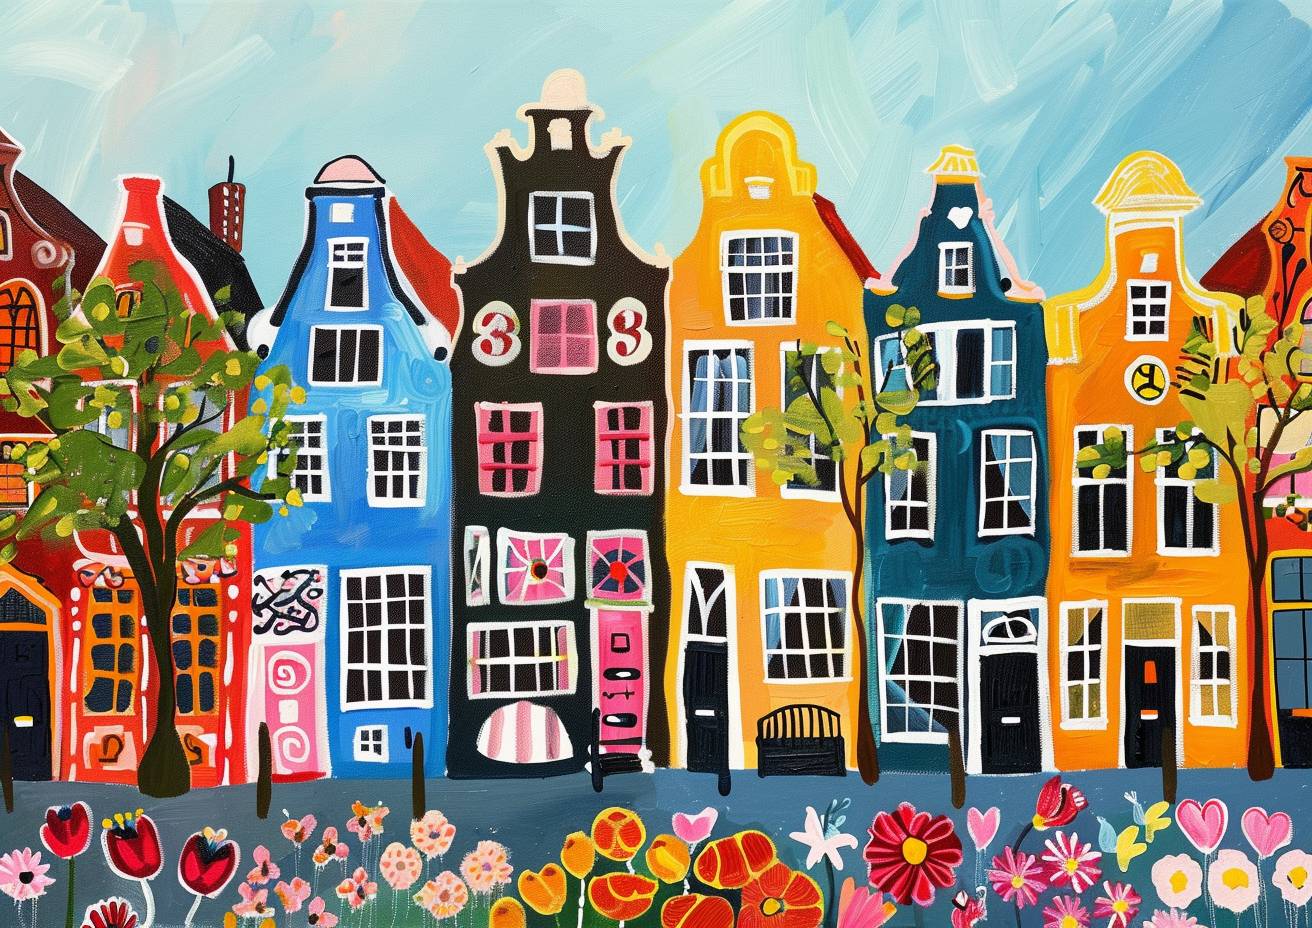 アムステルダム、カラフルな町屋と花々が並ぶ魅力的な通り、夏のイングランド、一番ユニークで素朴な芸術、ソフィー・ブラックオールやモード・ルイス、シャガールによる驚くべき絵画、素晴らしい筆づかい、鮮明さ、高品質、傑作、ハイクオリティ、